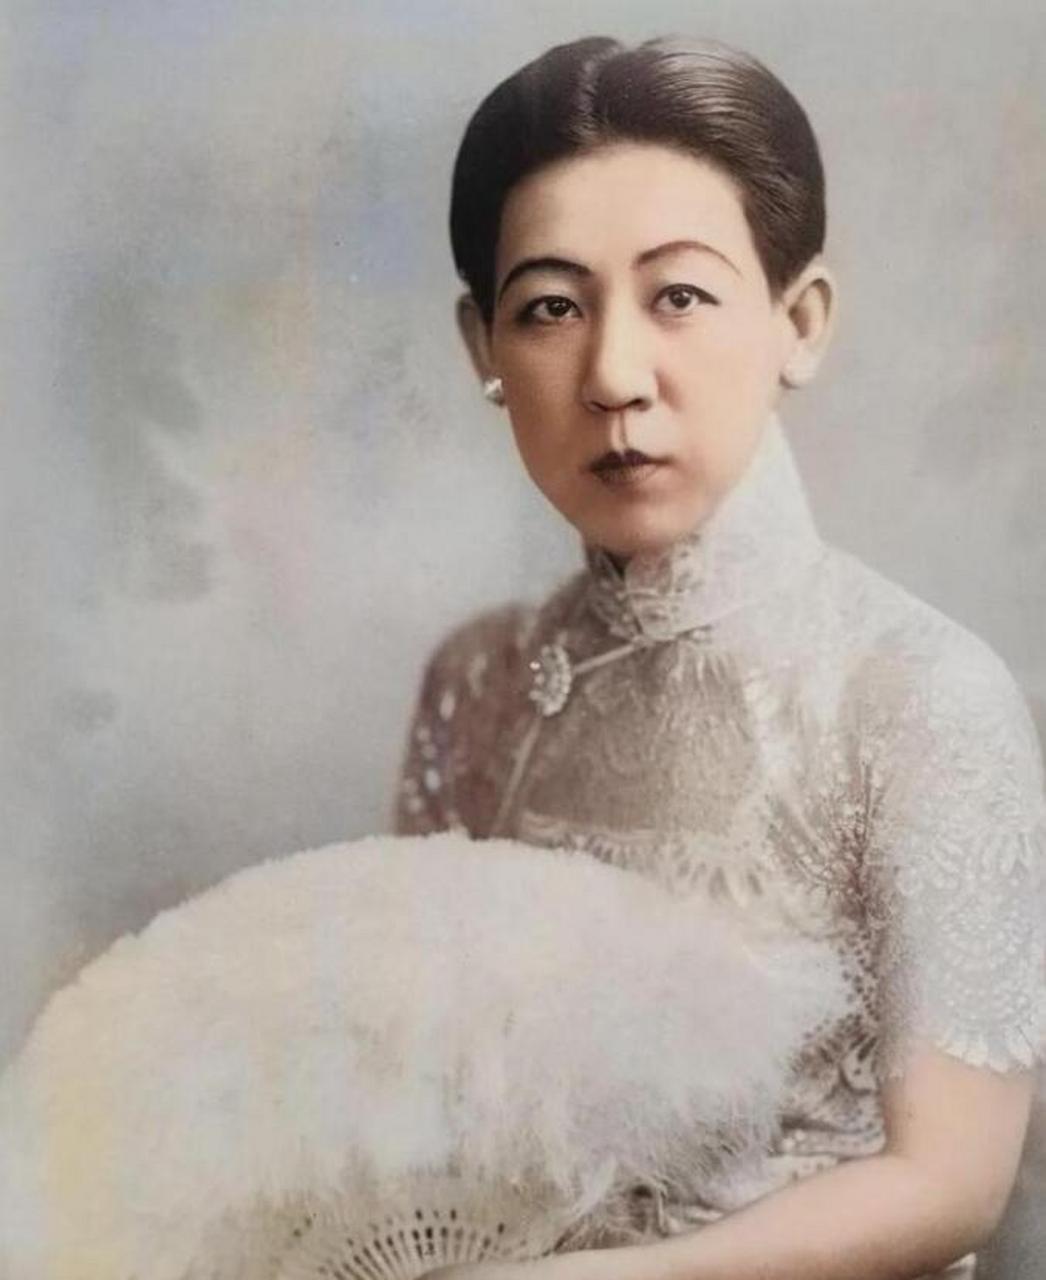 川岛芳子,这位神秘的女性,在一张罕见的照片中展现了令人难以置信的